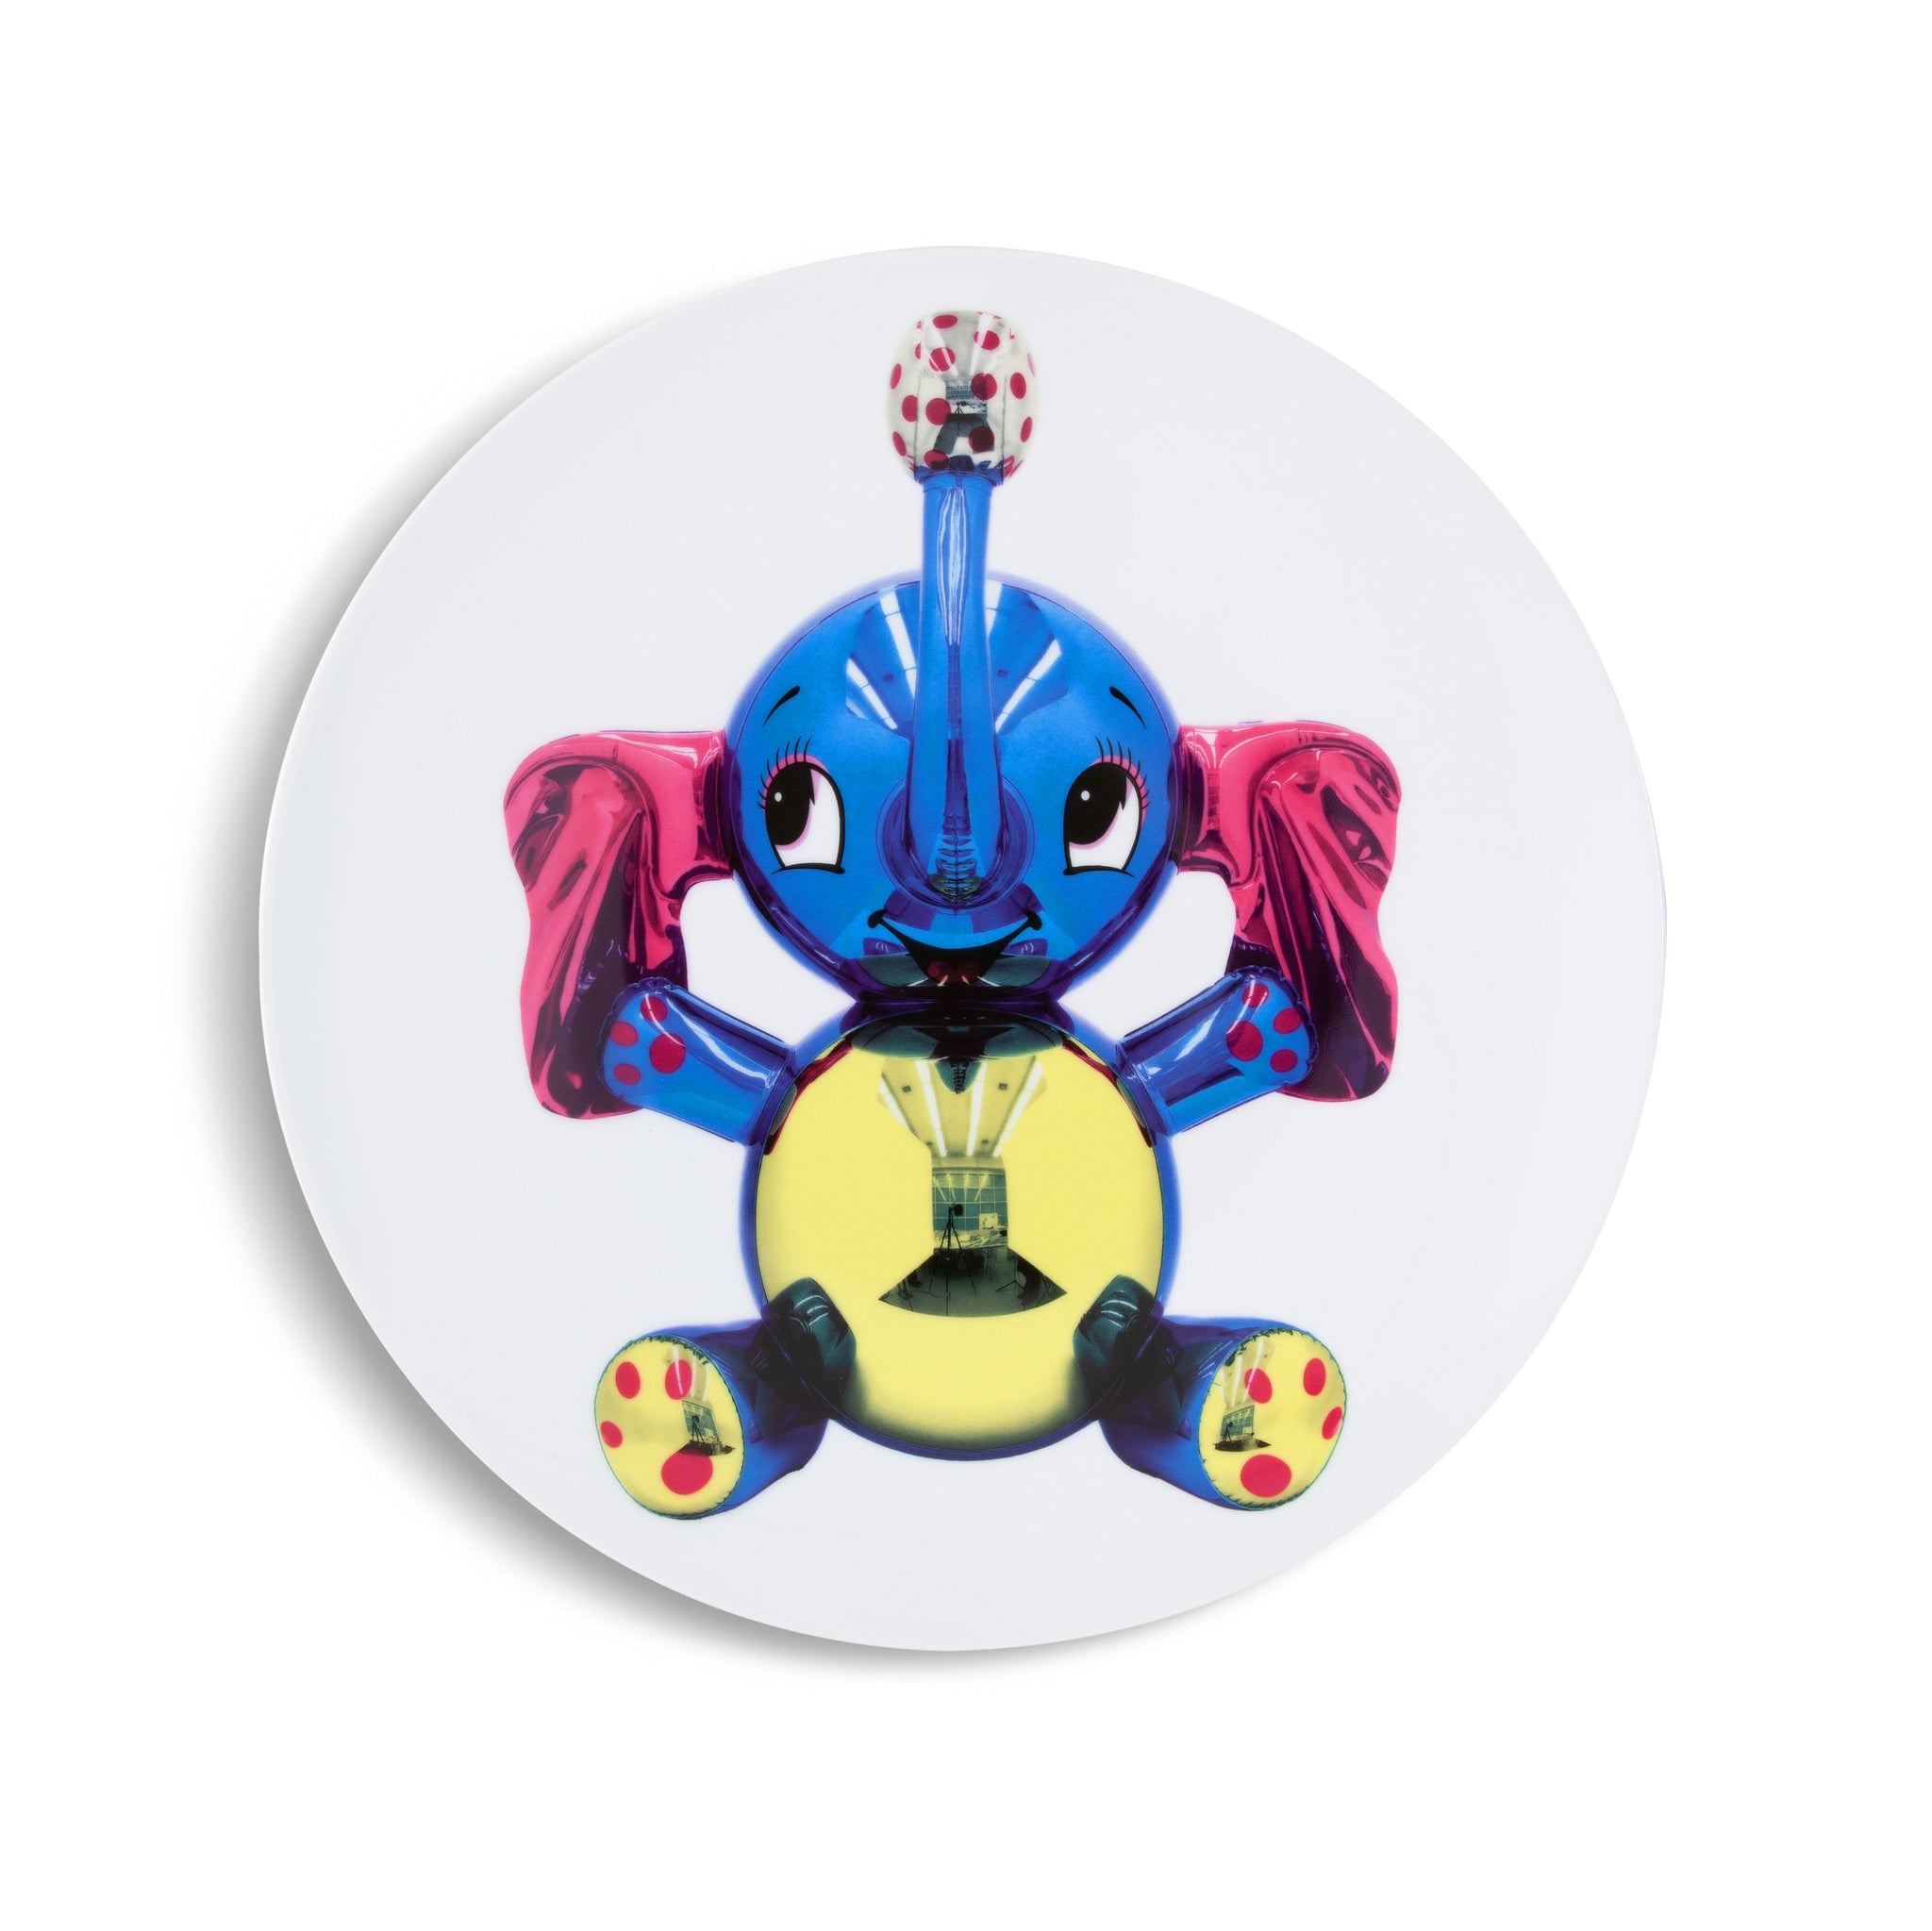 Jeff Koons: Elephant Plate